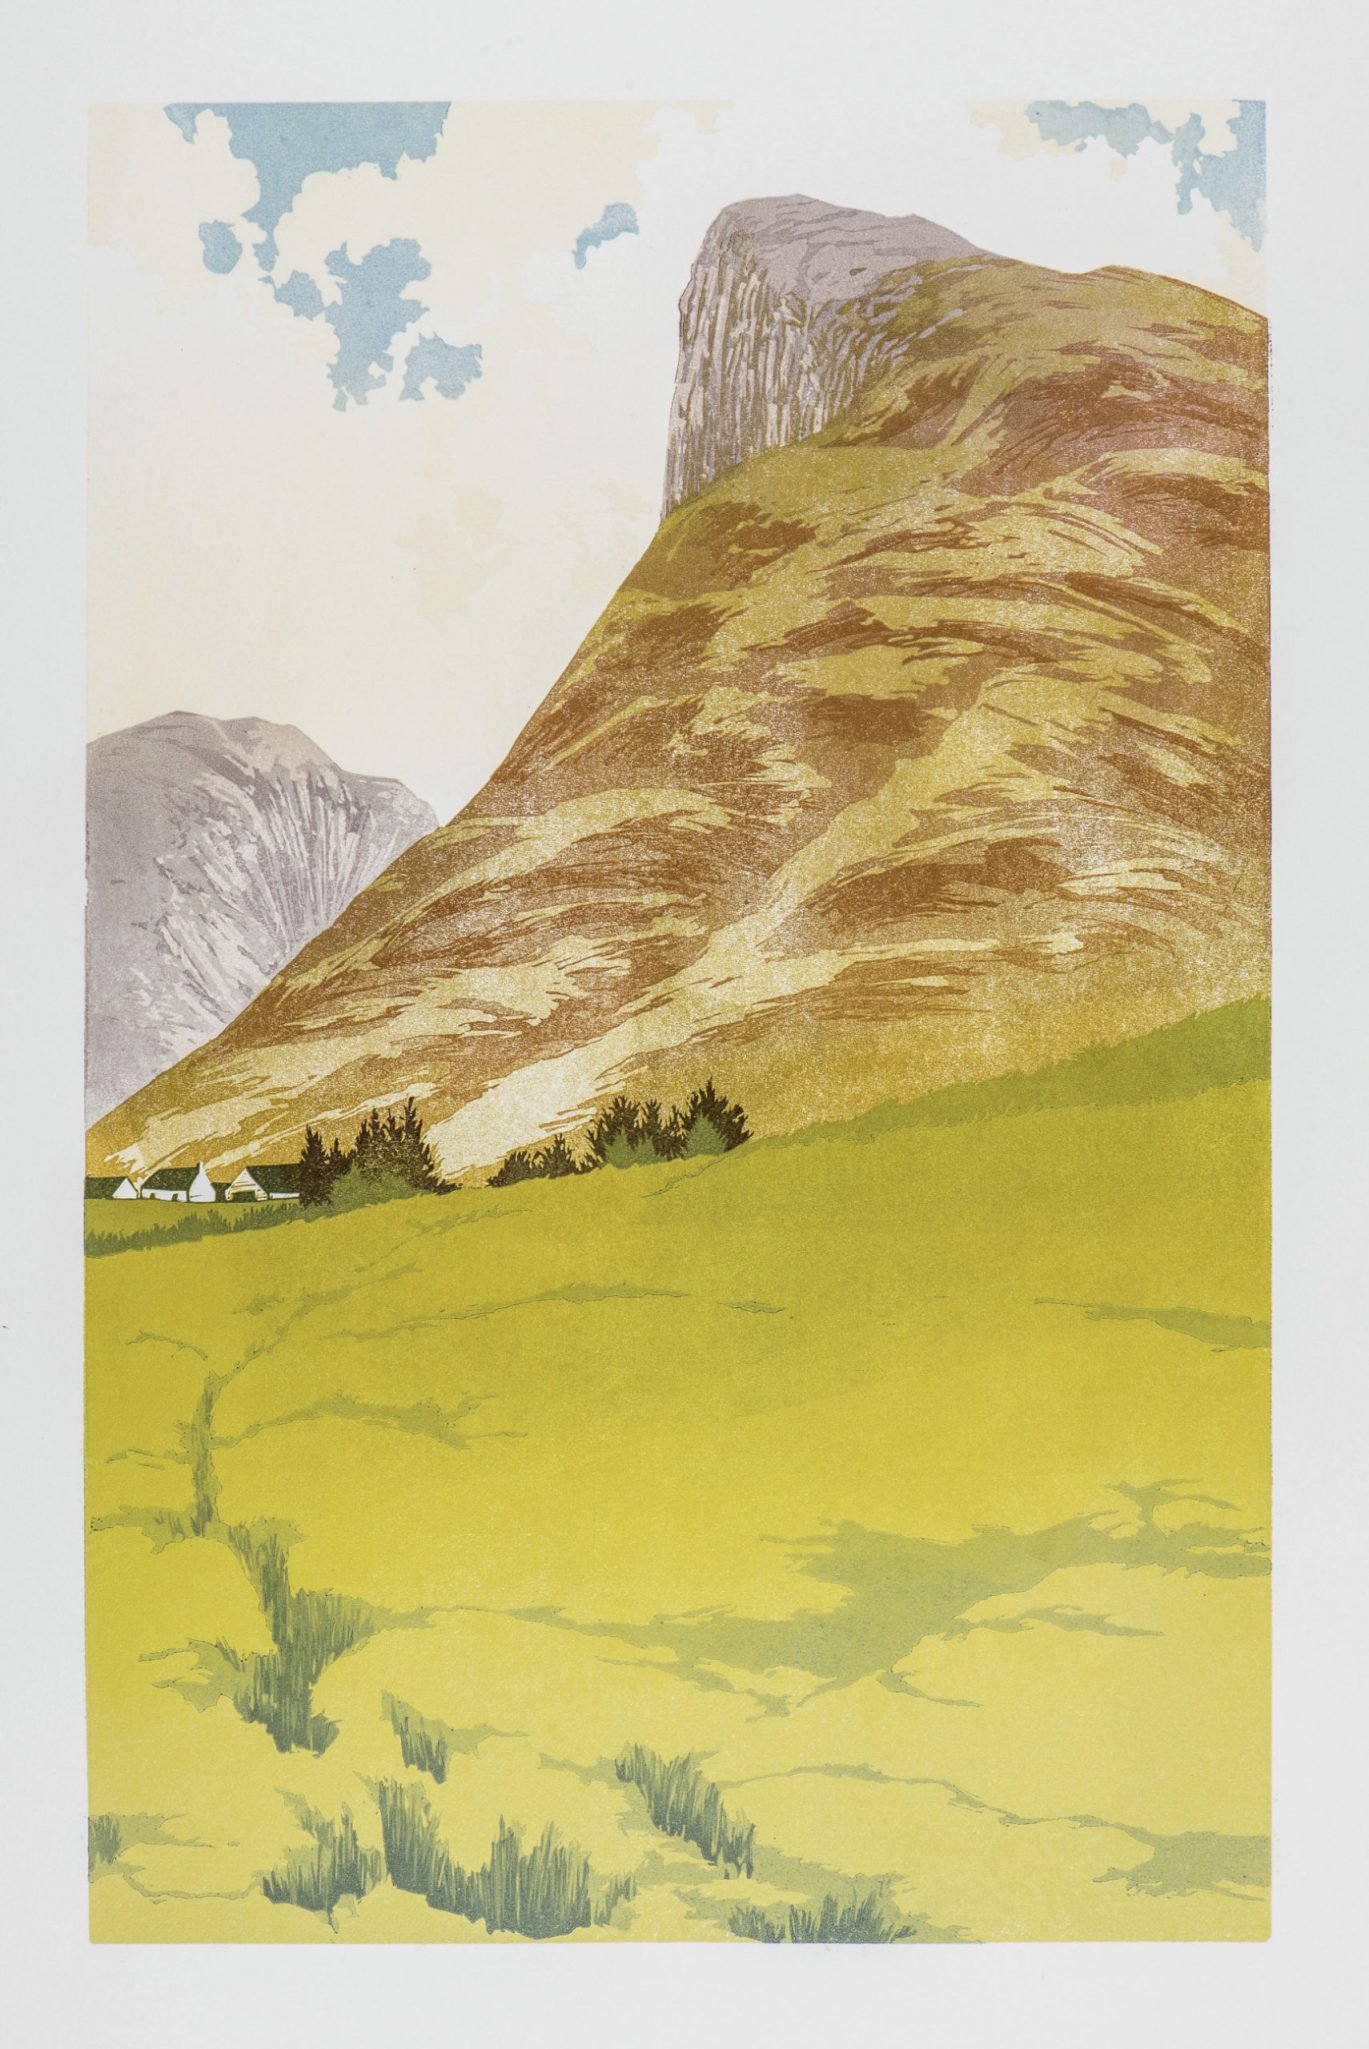 Laura Boswell paisaje ukiyo-e montaña, prado y nubes